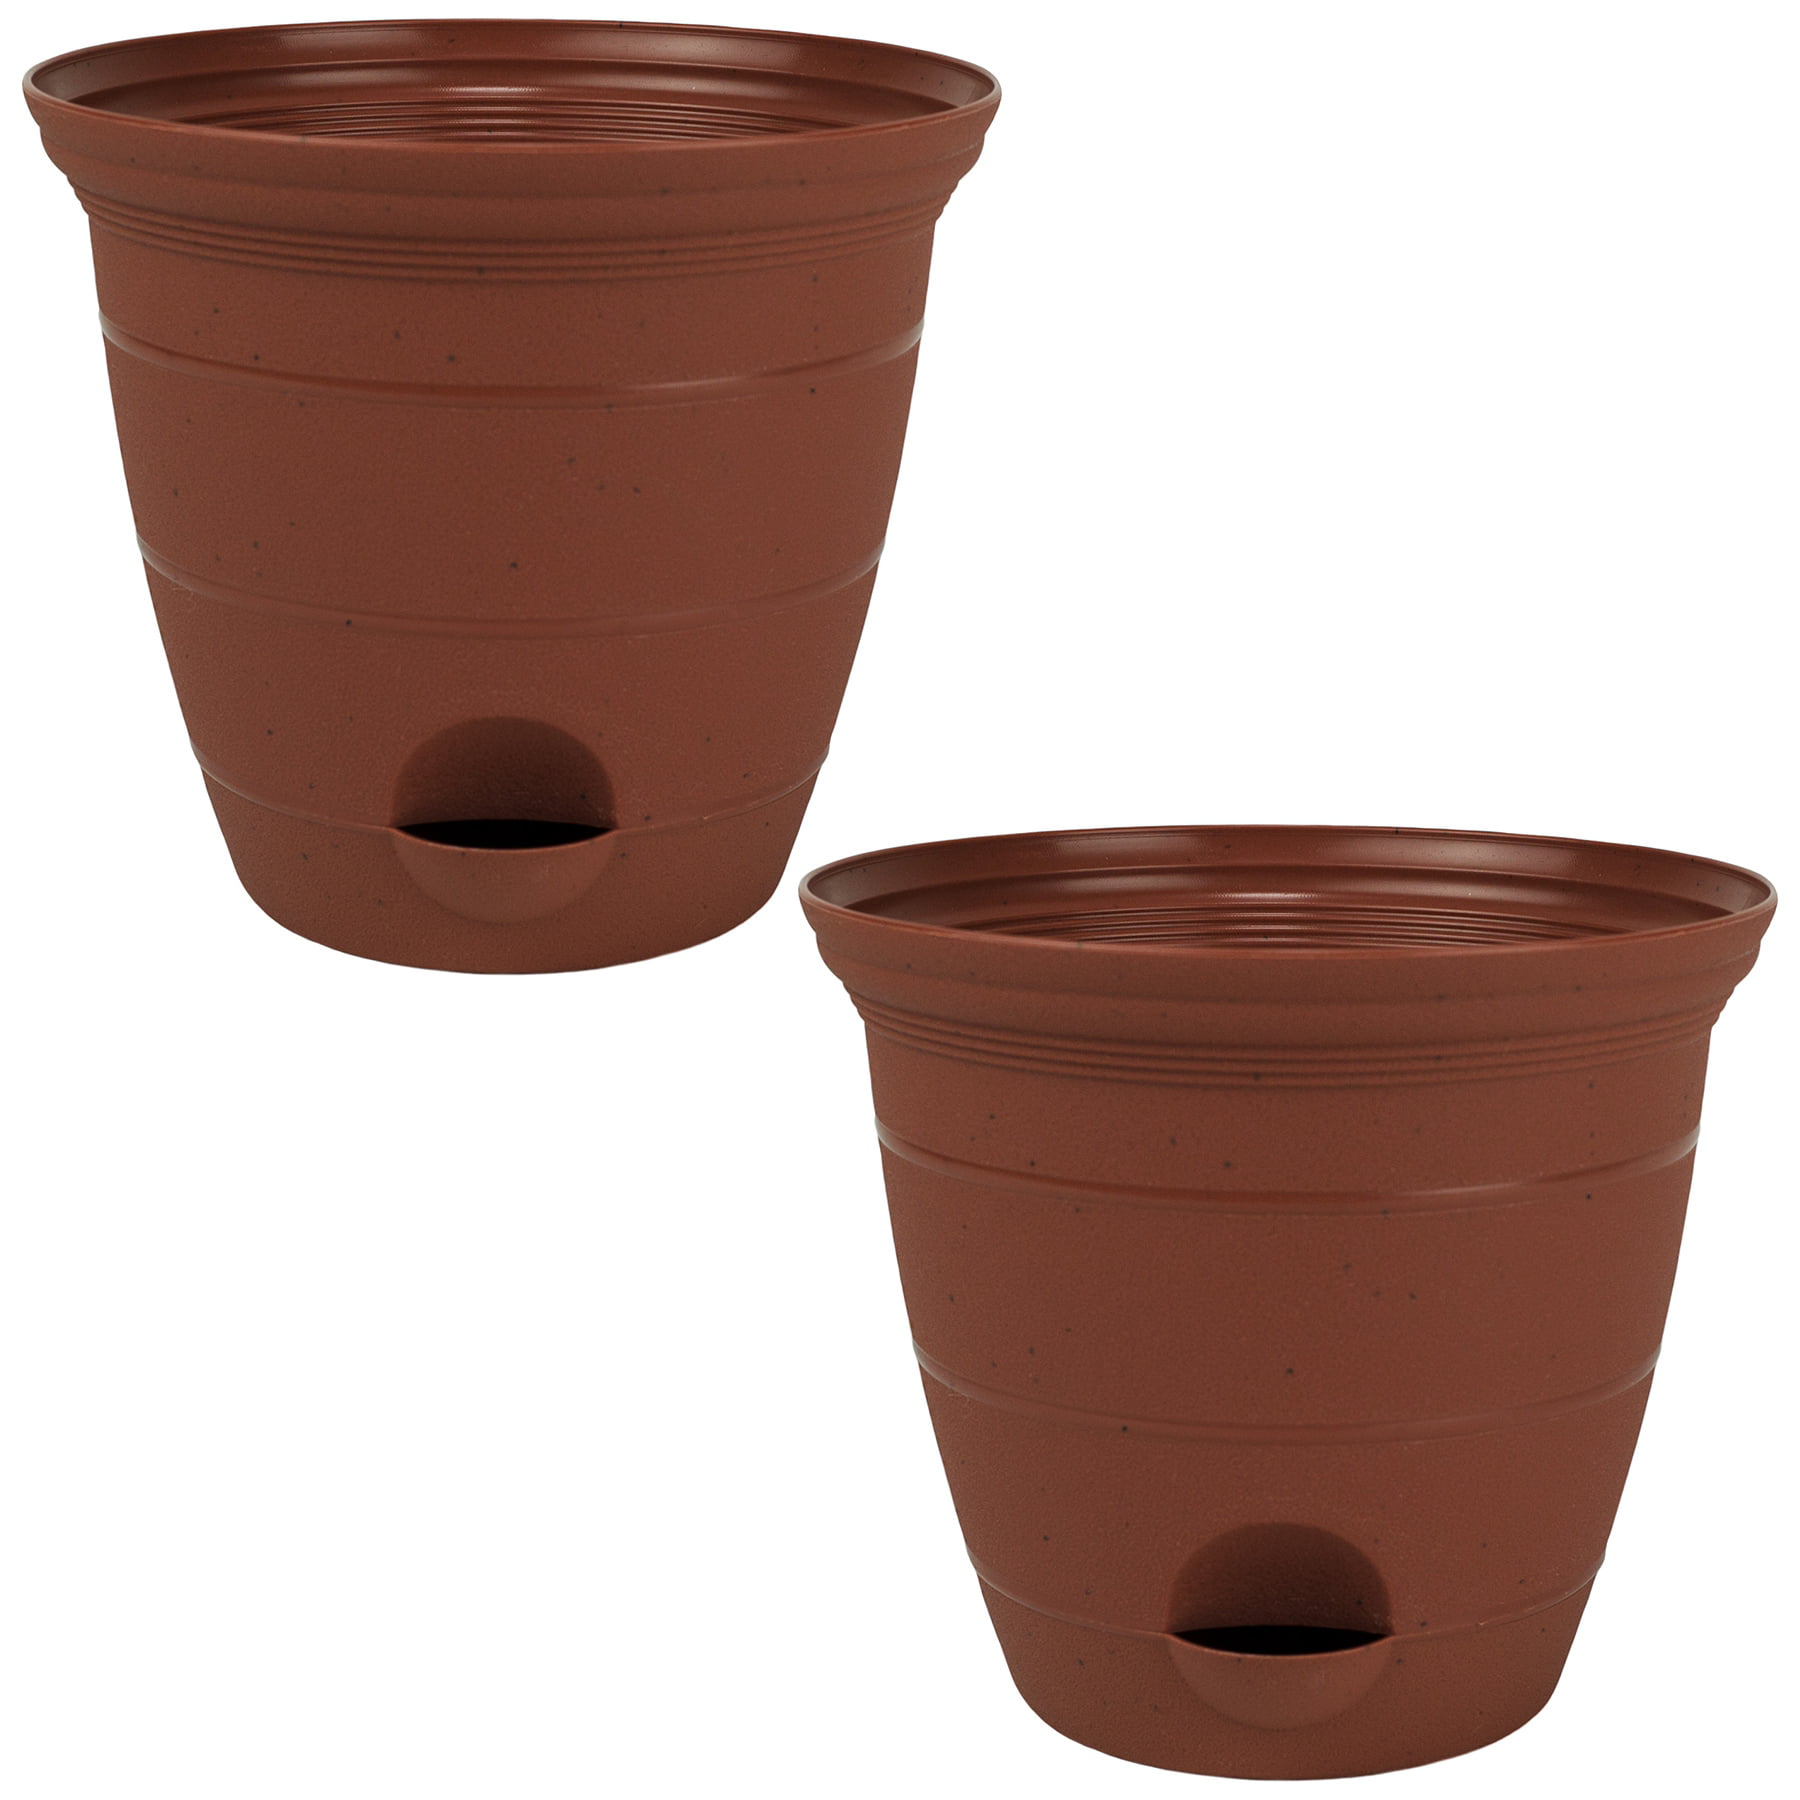 12 garden plant pots